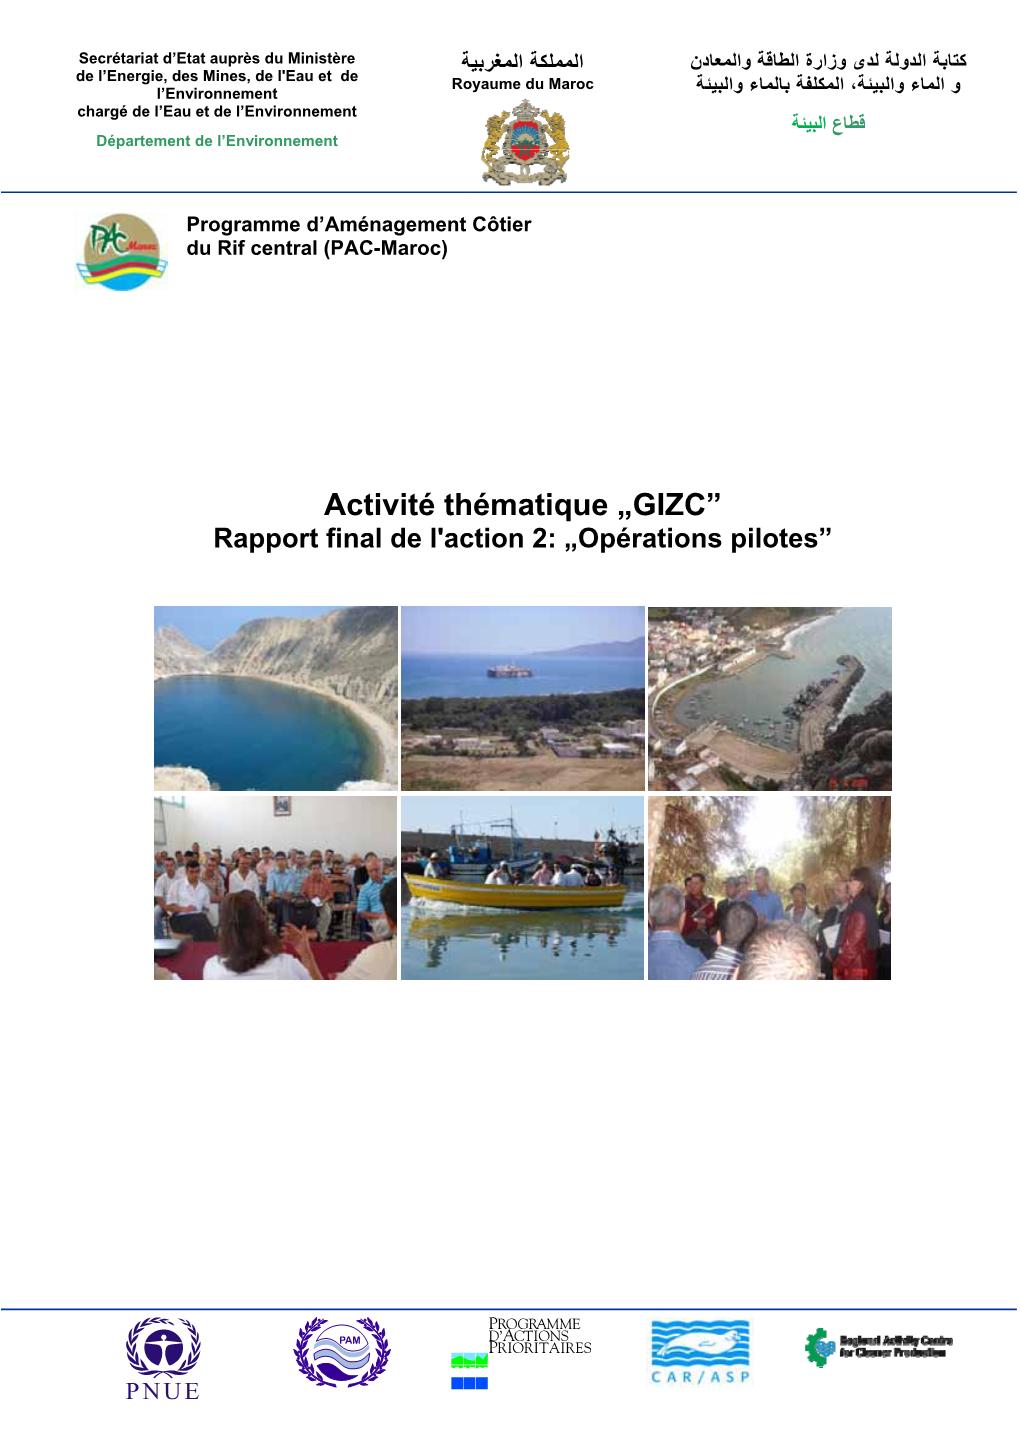 GIZC” Rapport Final De L'action 2: „Opérations Pilotes”